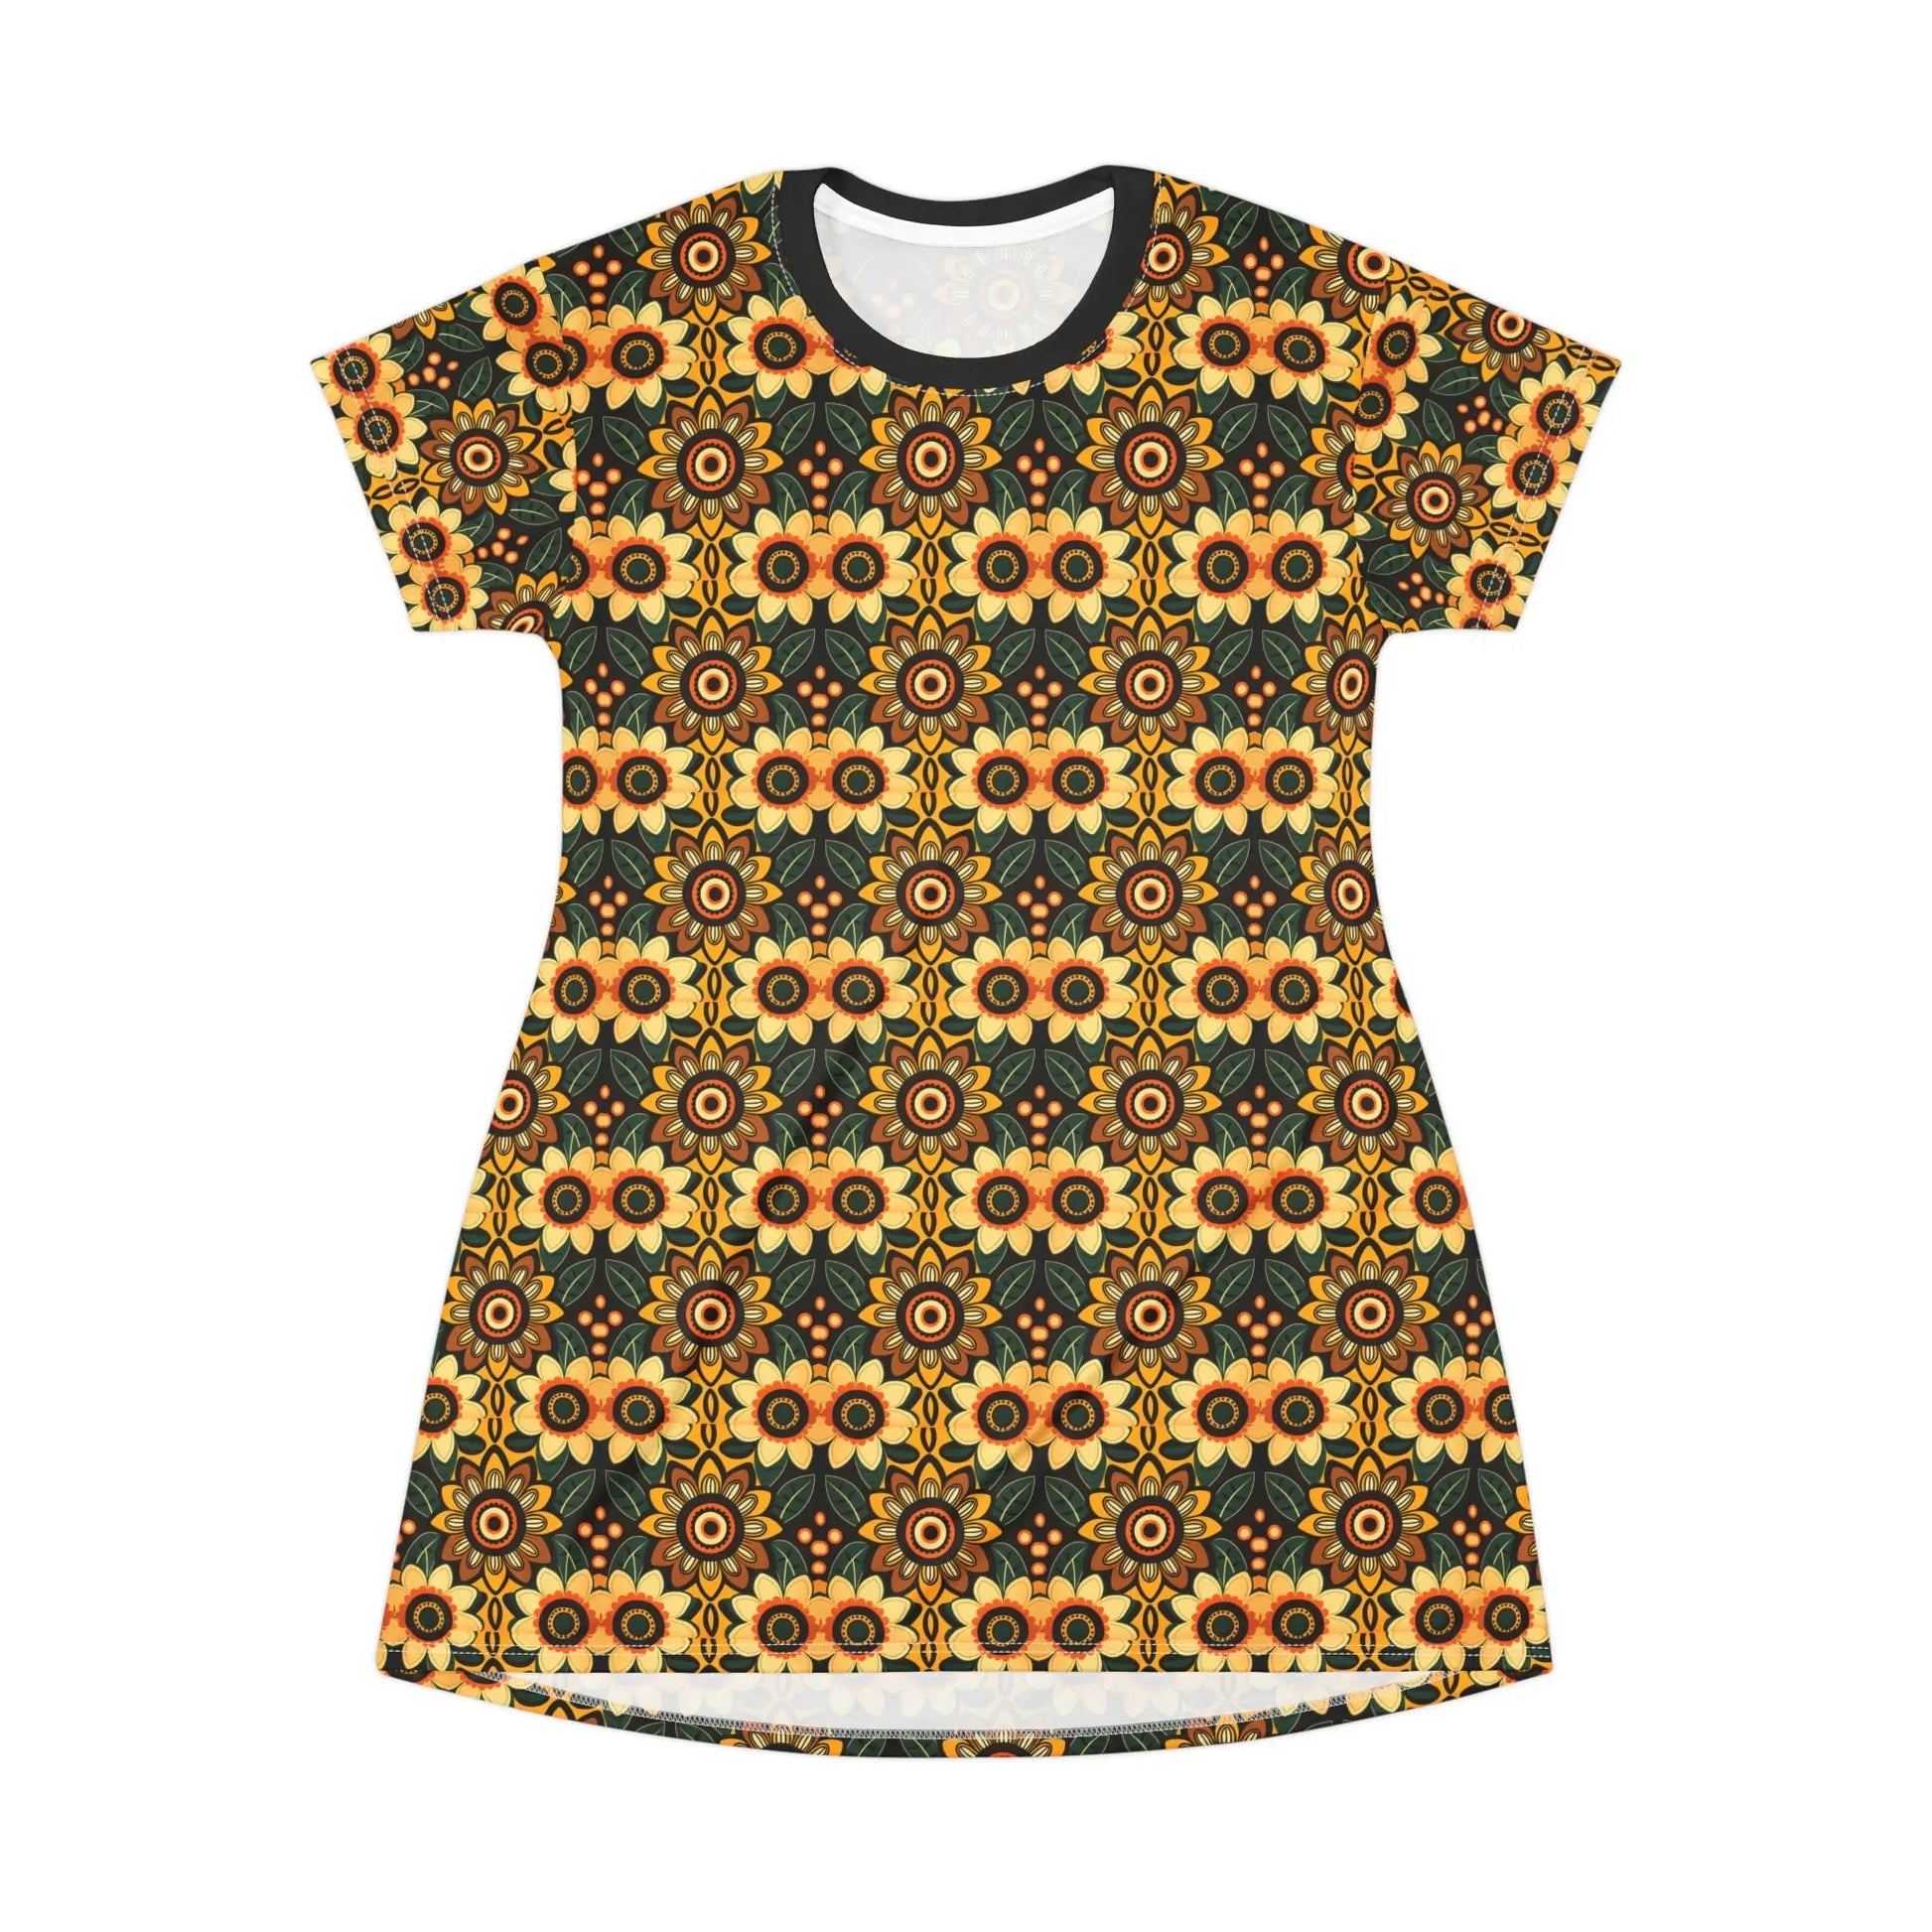 Primitive Print T-Shirt Dress - Official primitive store